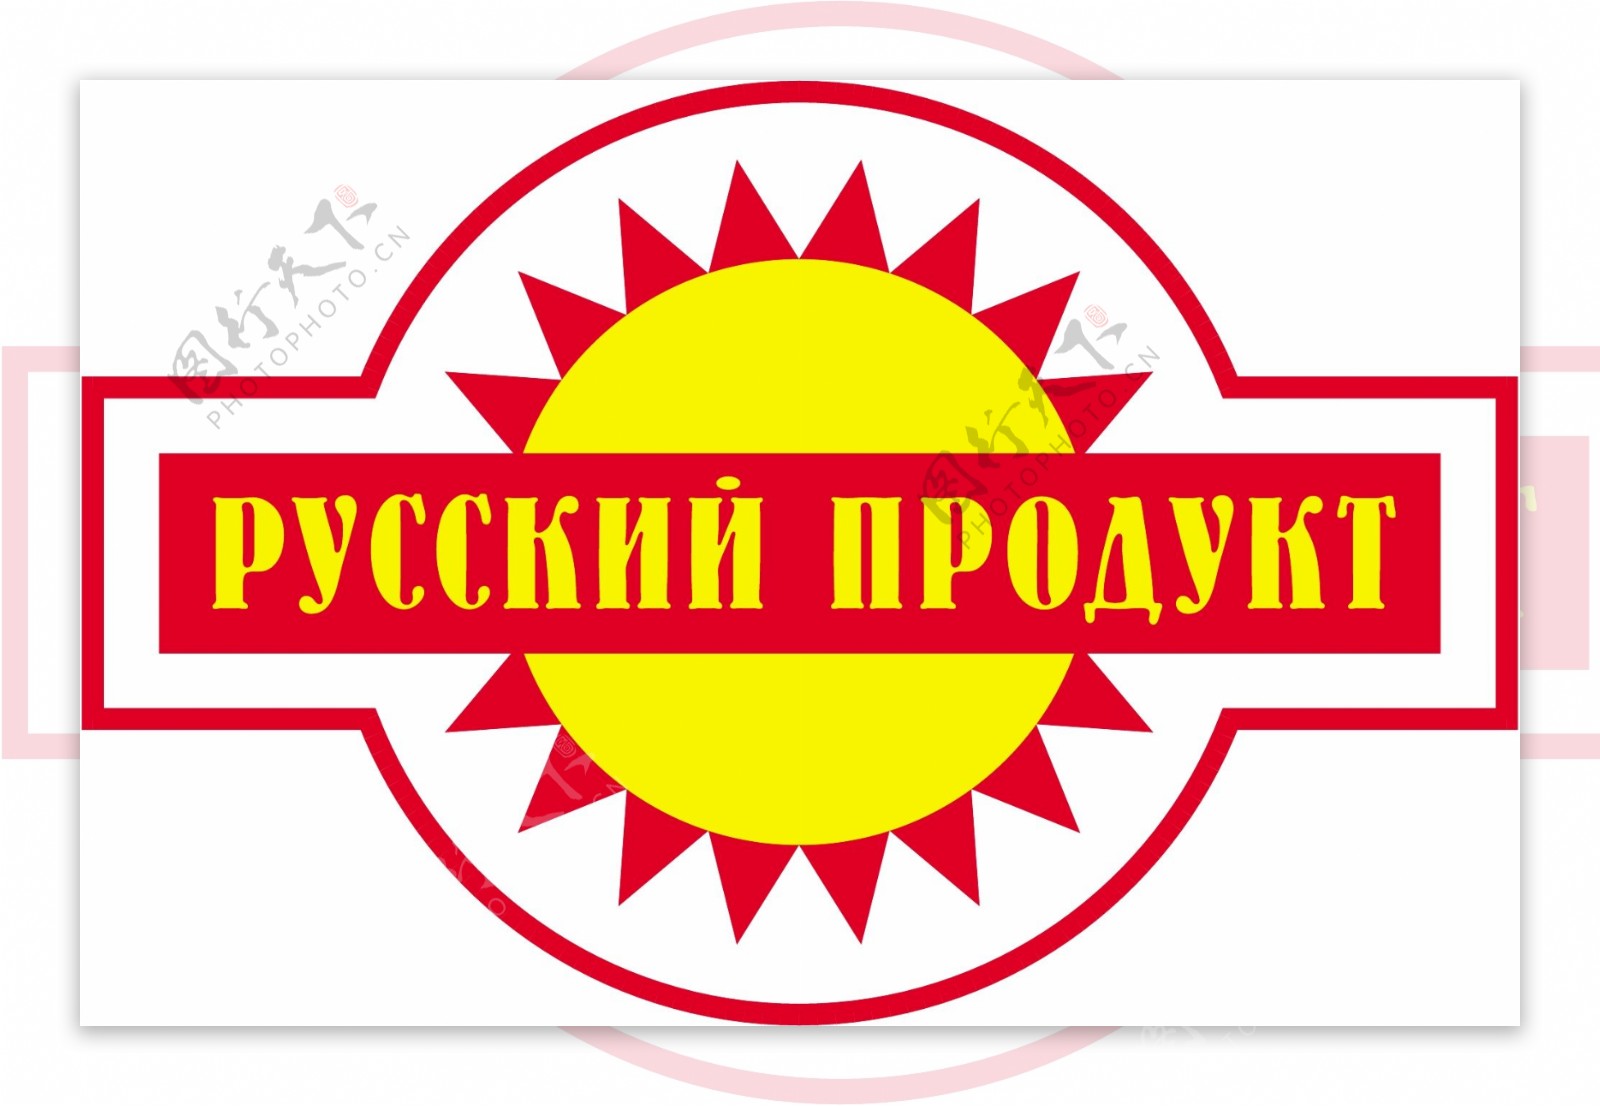 俄罗斯产品标志